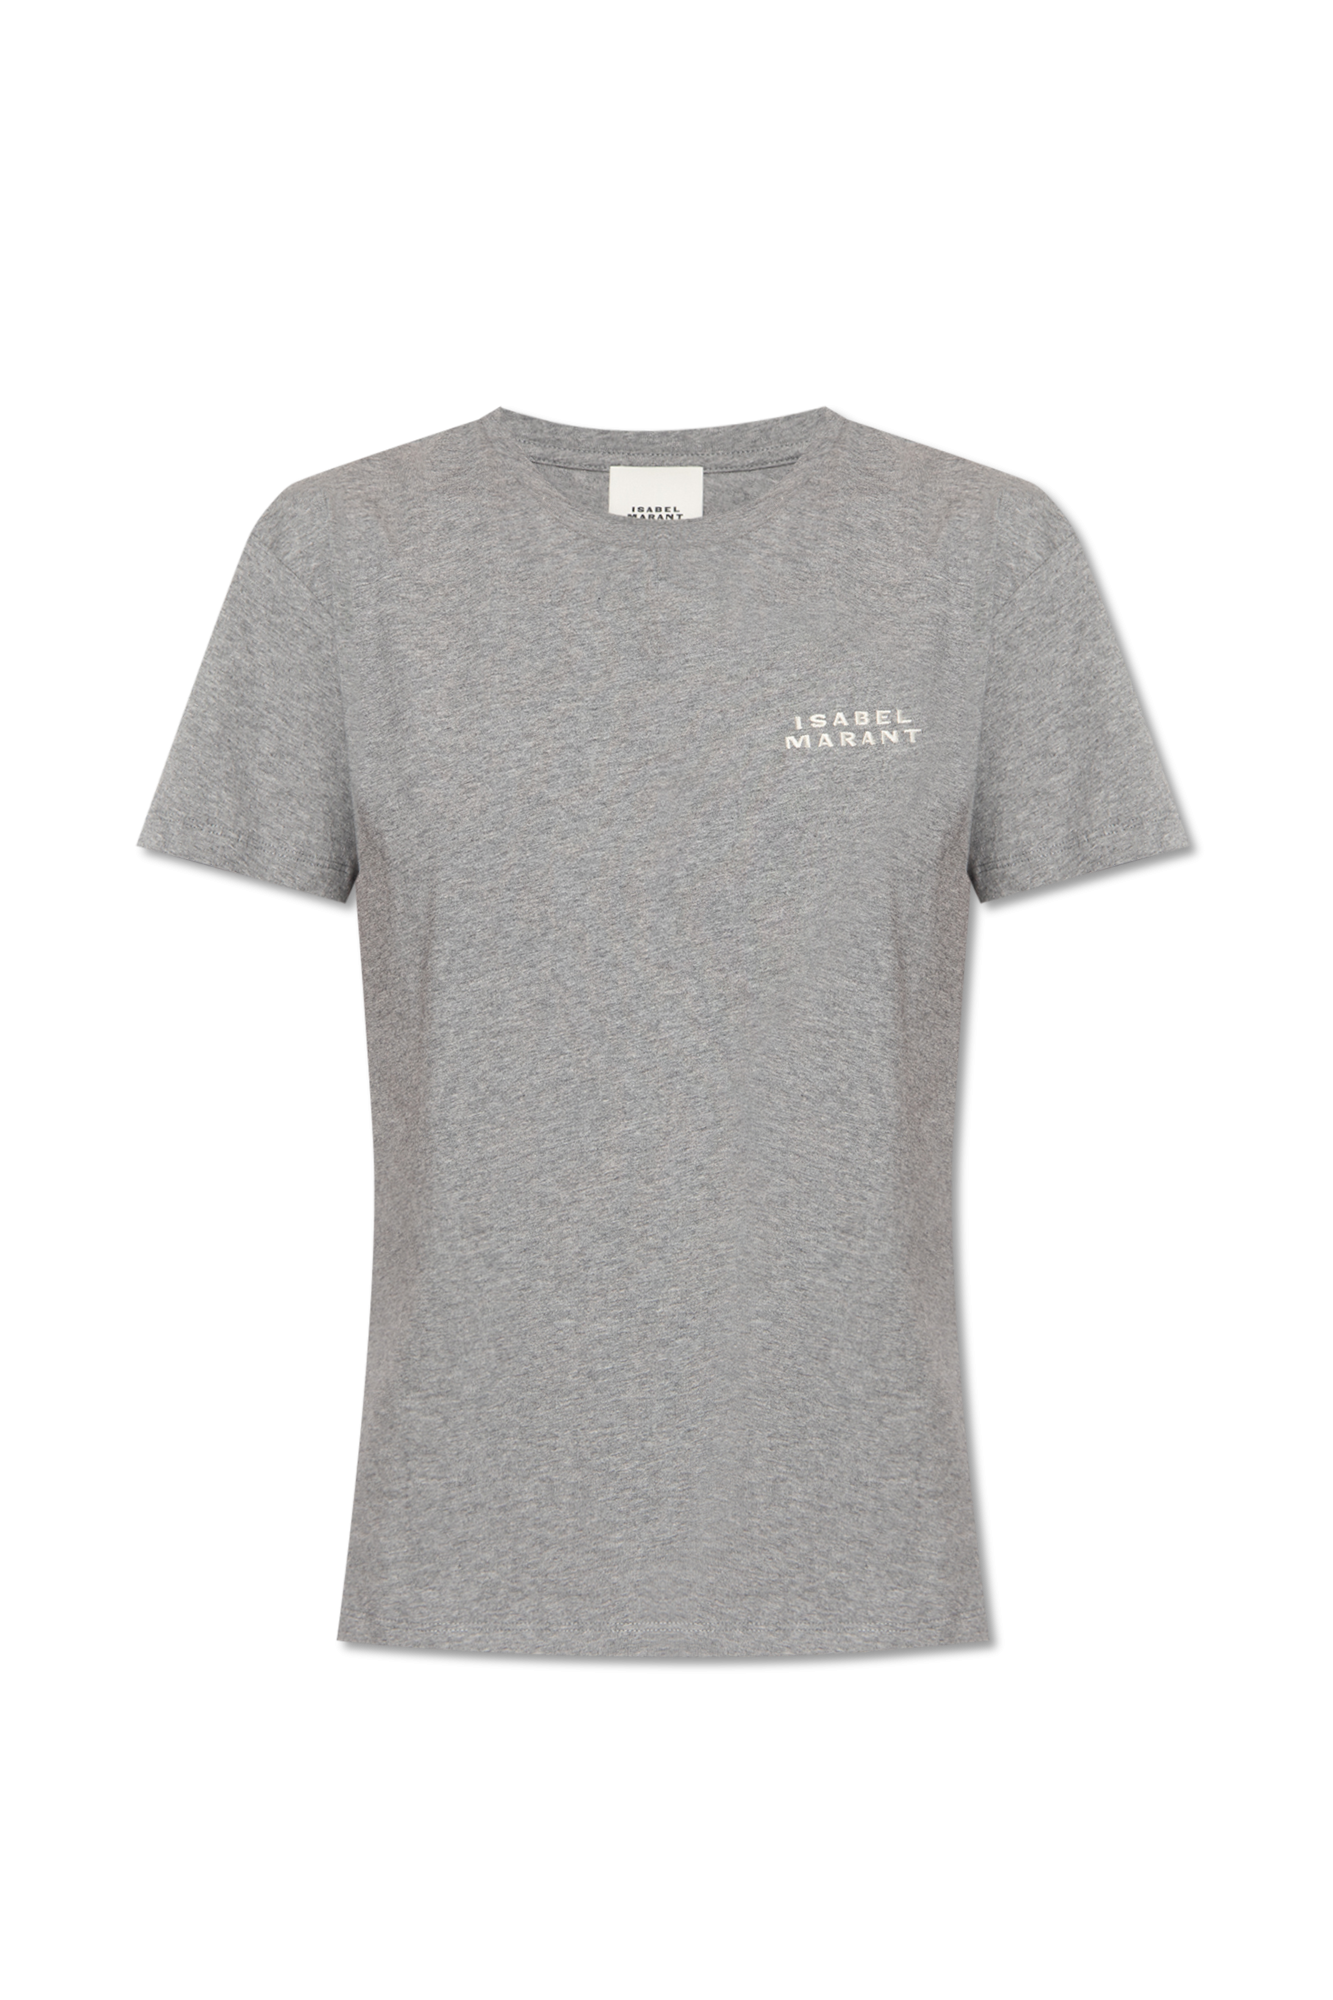 Grey 'Zewel' T-shirt with logo Isabel Marant - Vitkac Canada